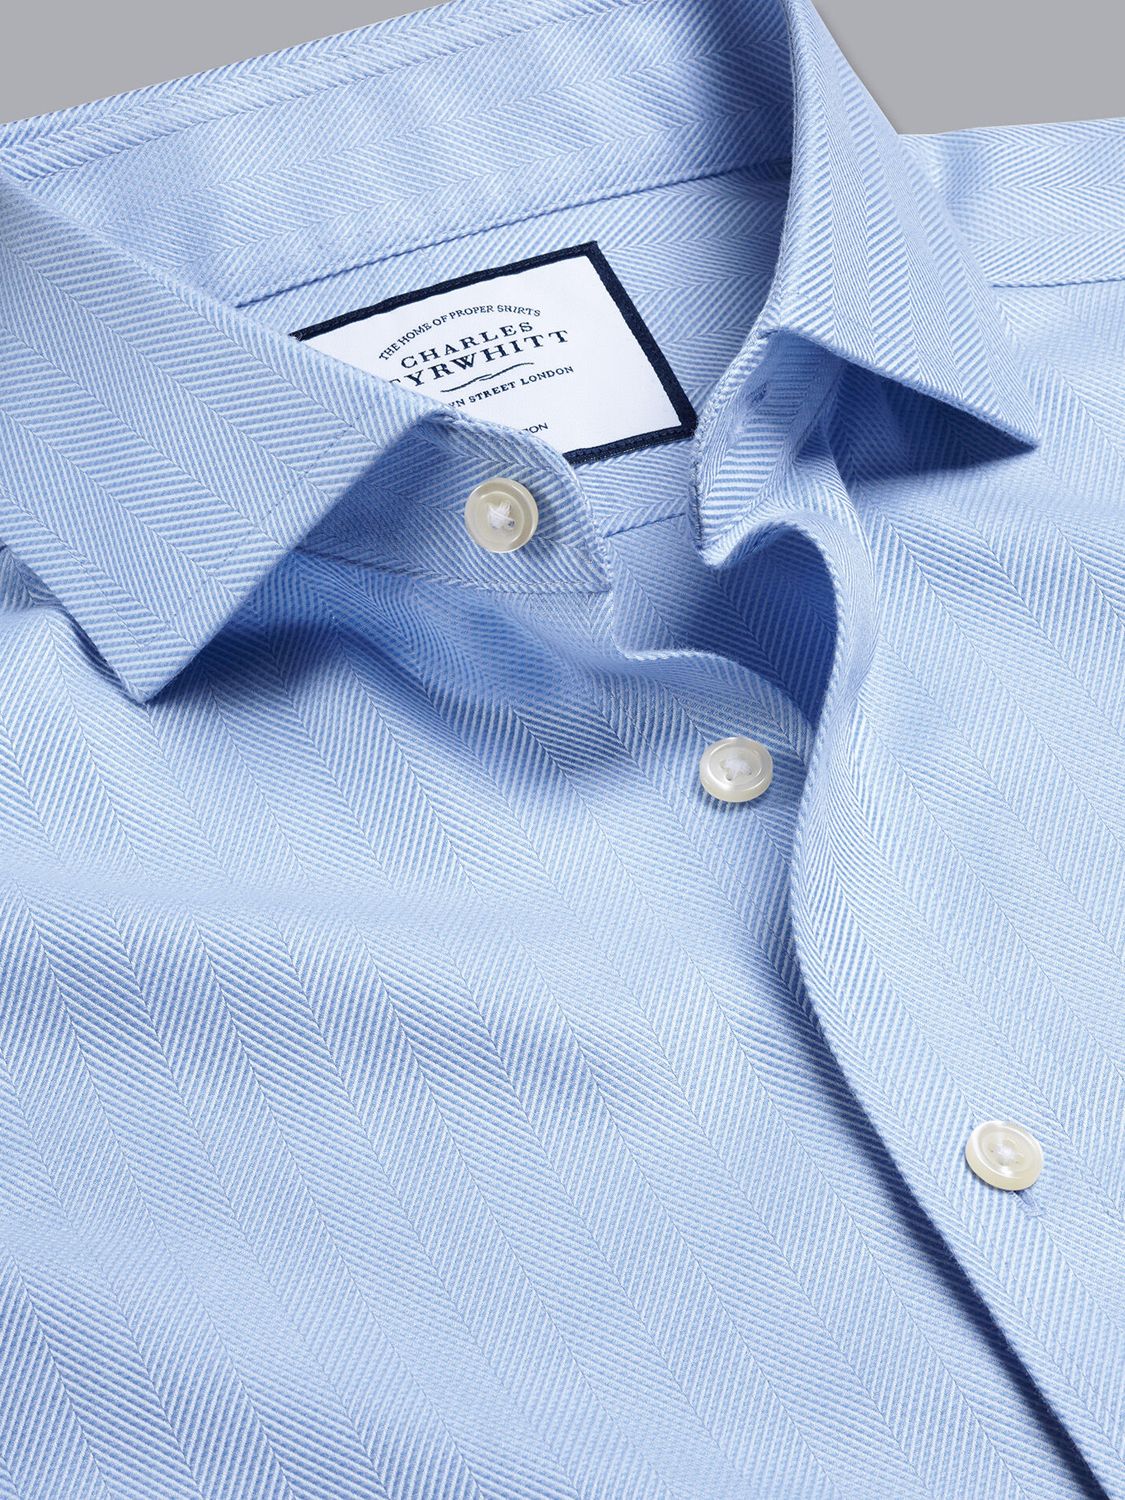 Charles Tyrwhitt Cutaway Collar Non Iron Herringbone Shirt, Sky Blue at ...